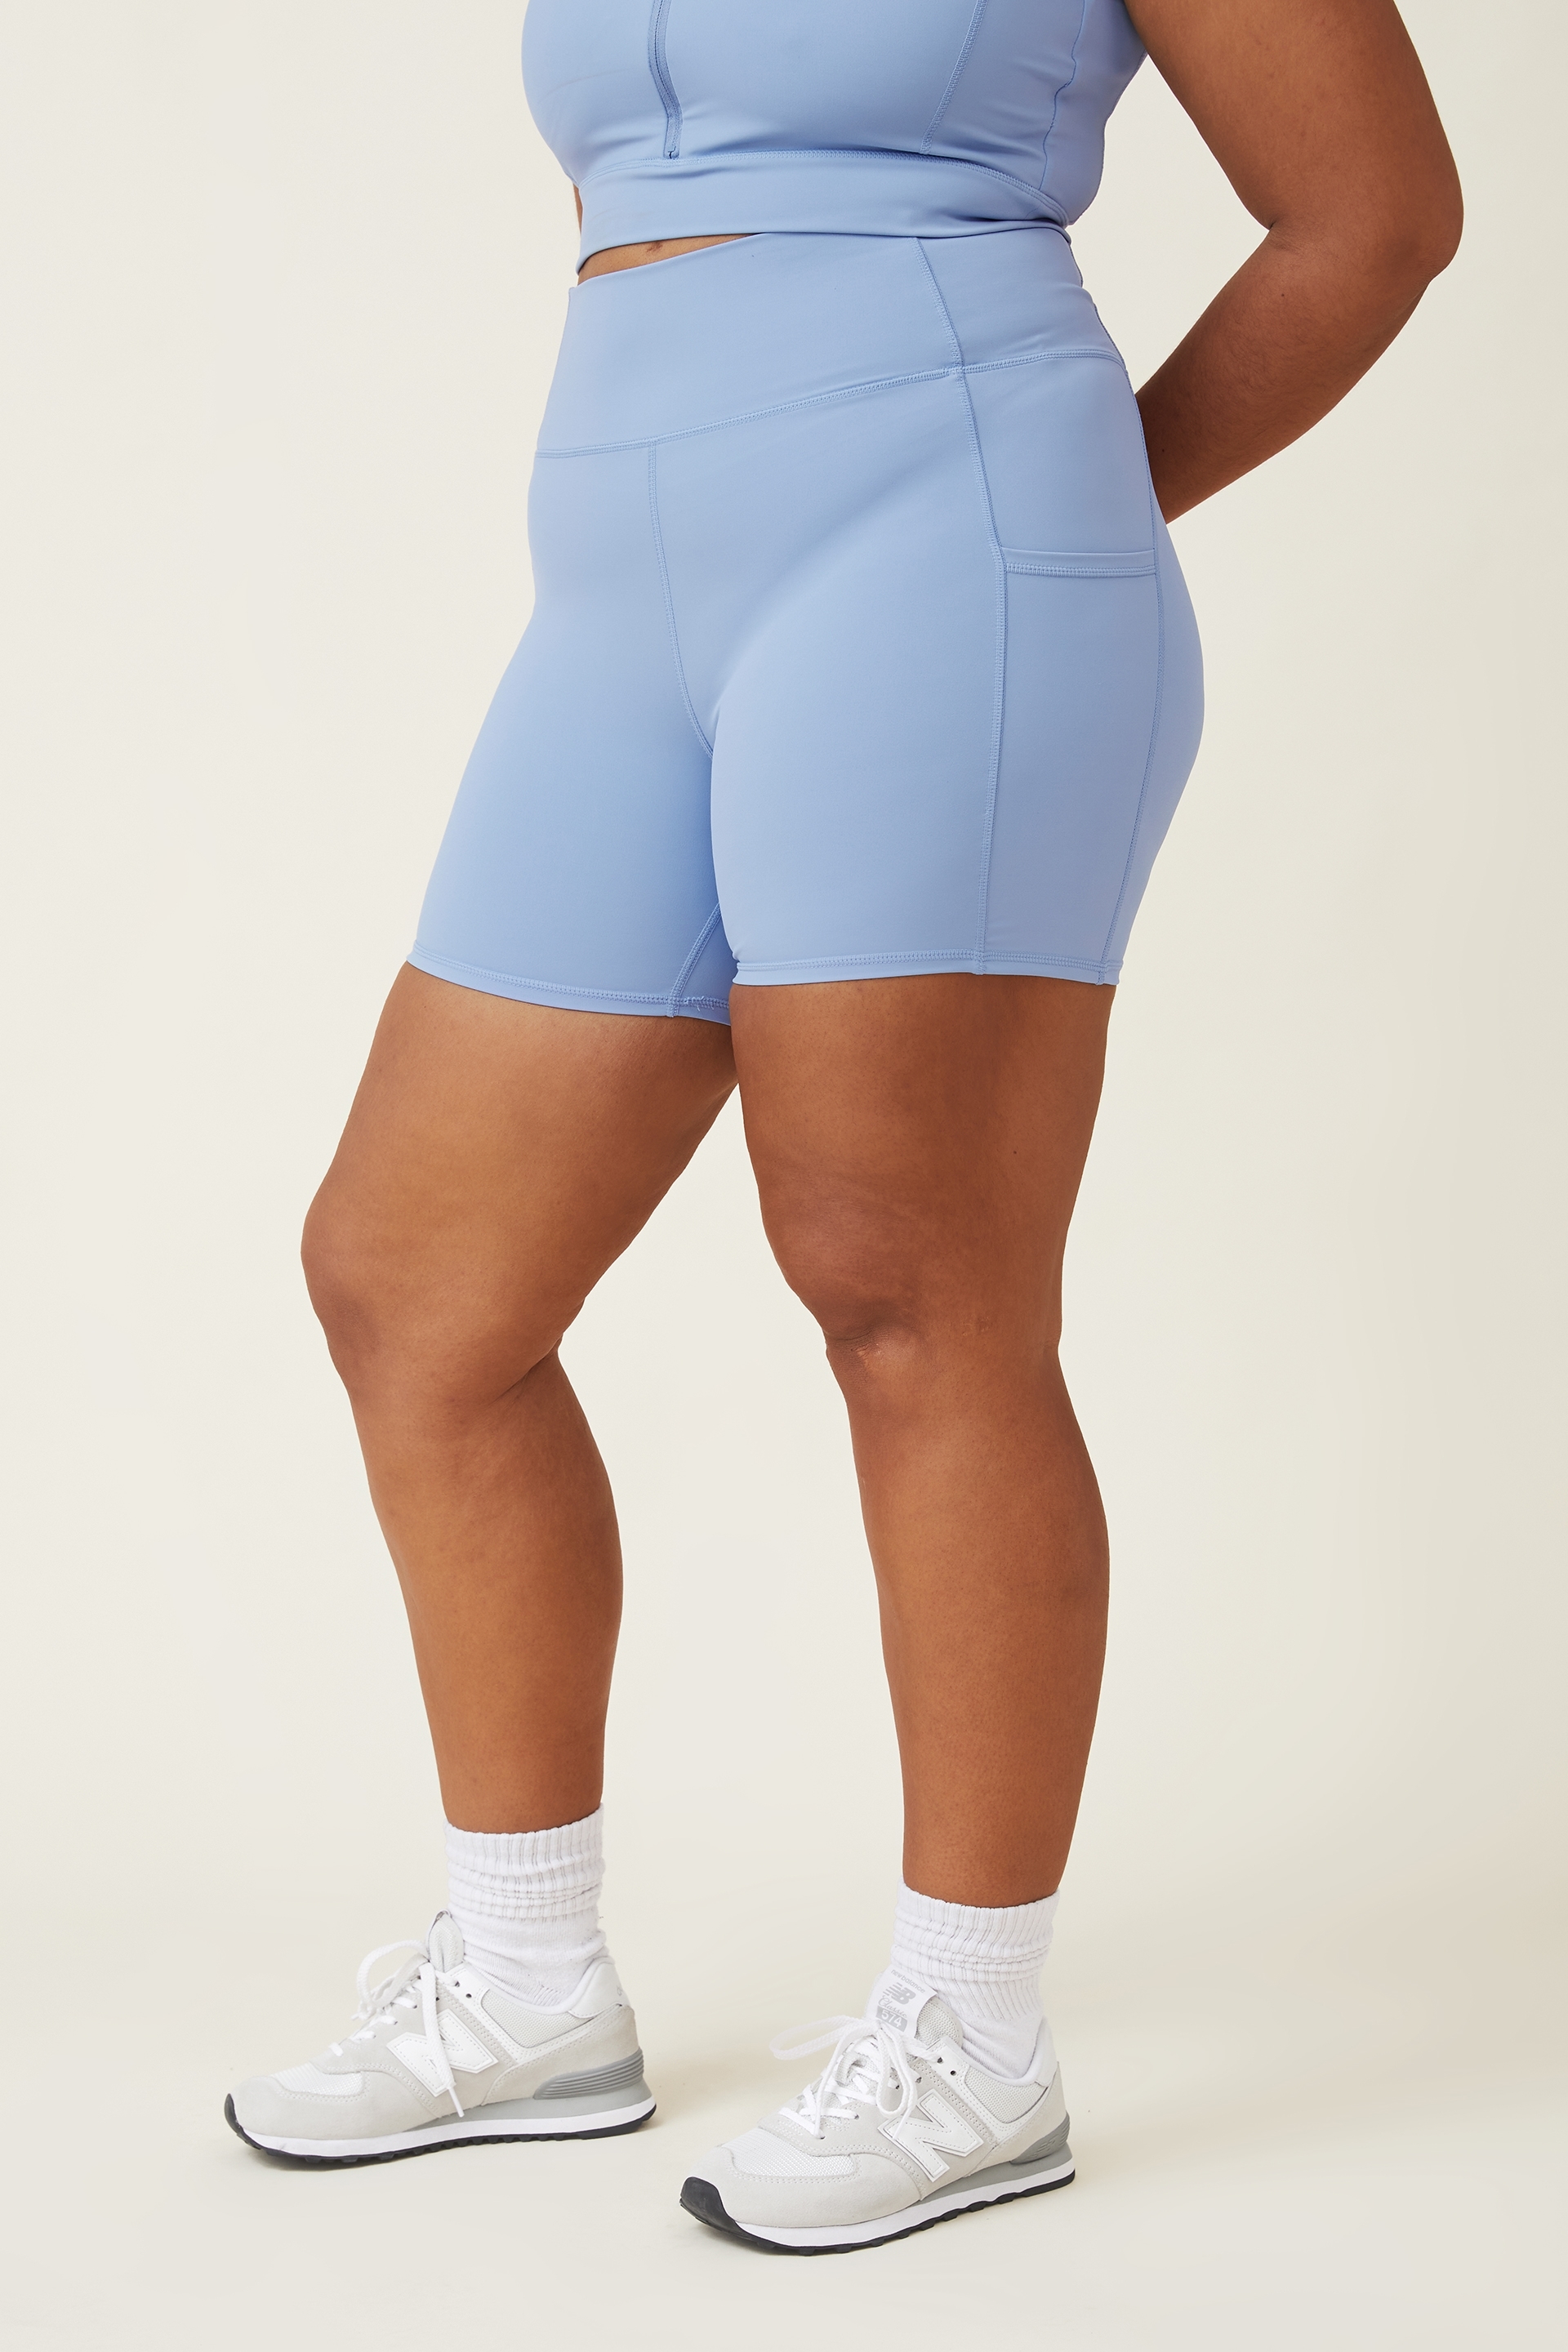 Decodeary 1/2/3 Women High Waist Sport Shorts Side Pocket Butt Hip